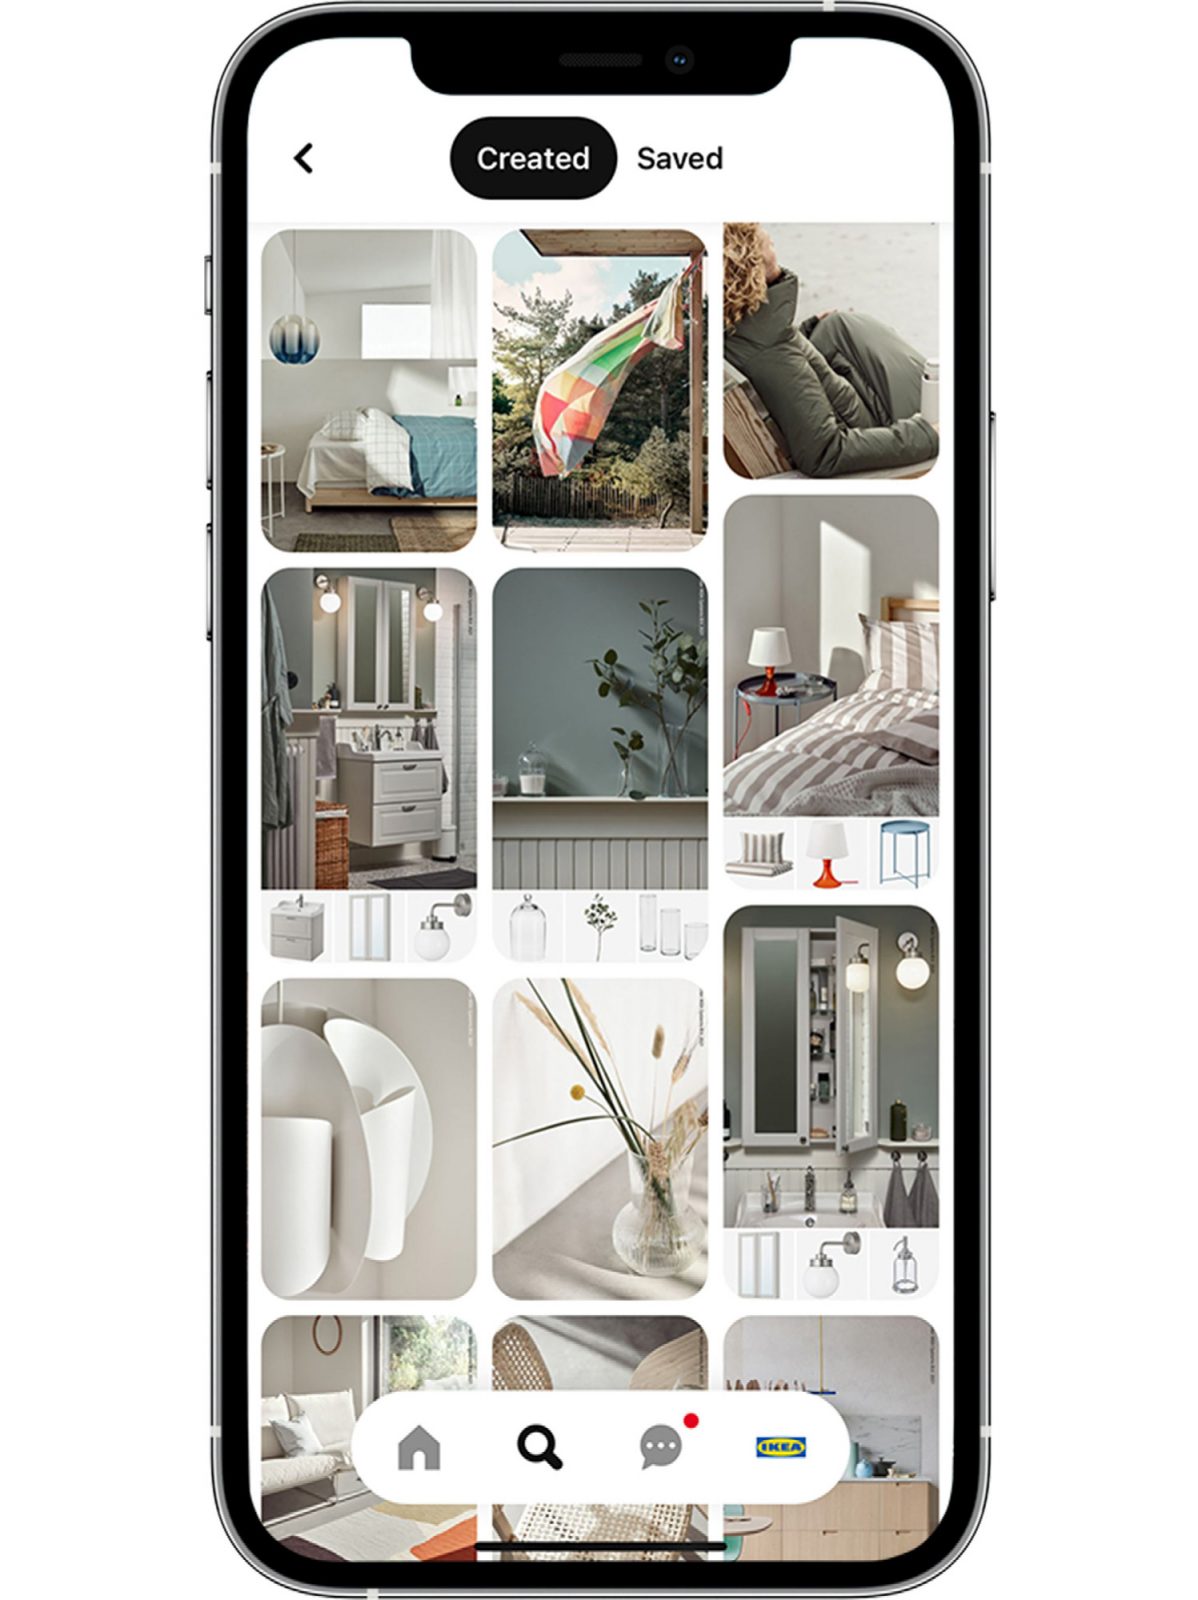 Mobilskärm med bildflöde som visar inredningslösningar för olika rumstyper, från vardagsrum till sovrum.